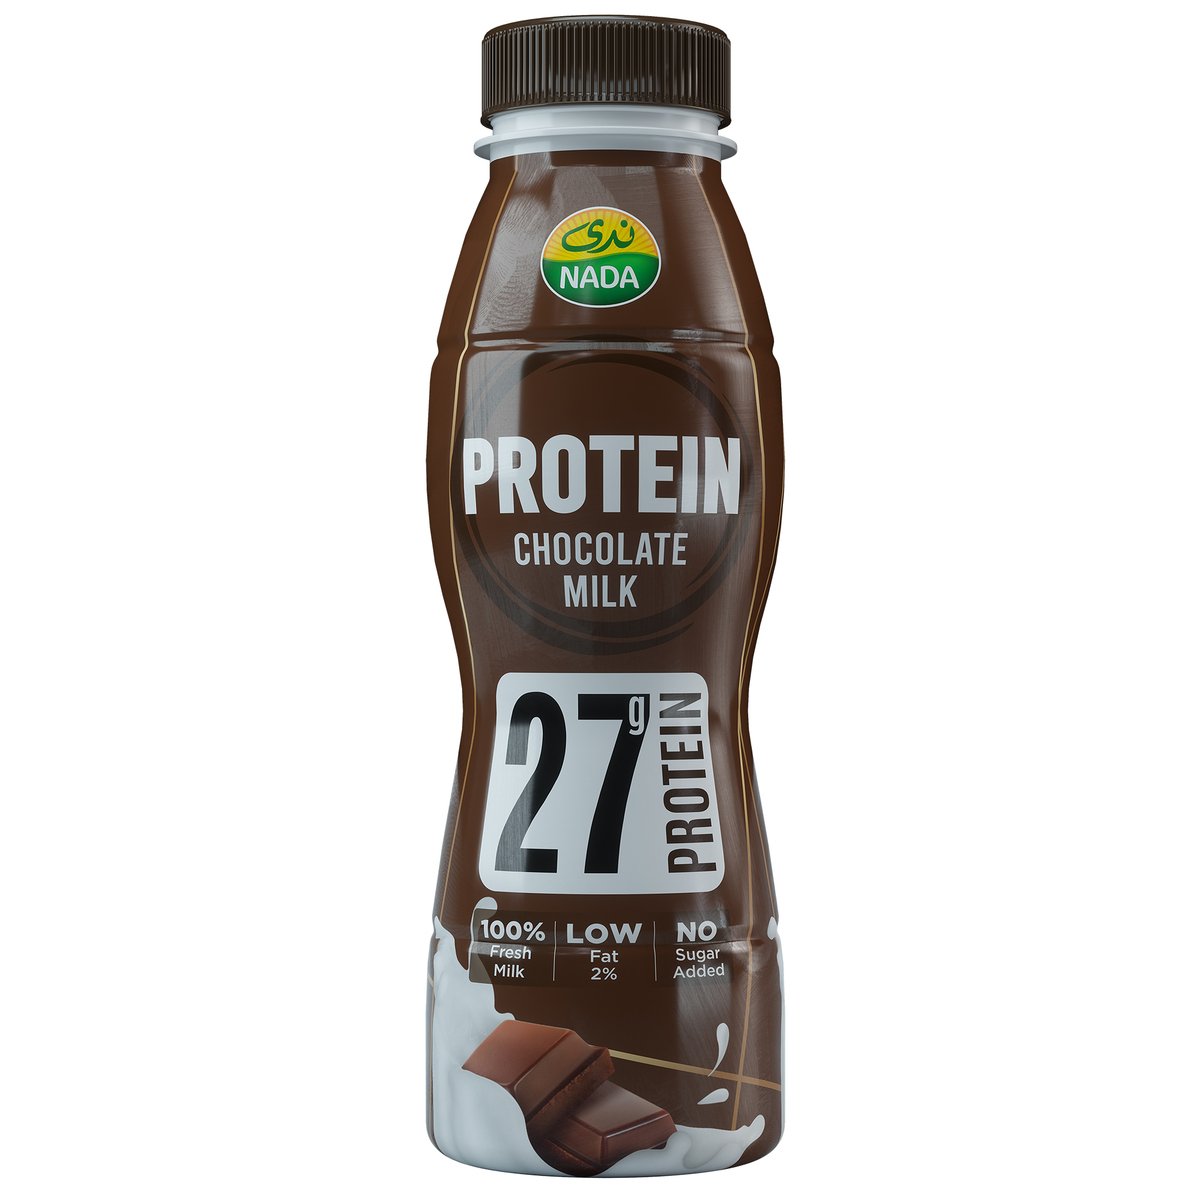 اشتري قم بشراء ندى بروتين حليب الشوكولاتة 320 مل Online at Best Price من الموقع - من لولو هايبر ماركت Flavoured Milk في الامارات